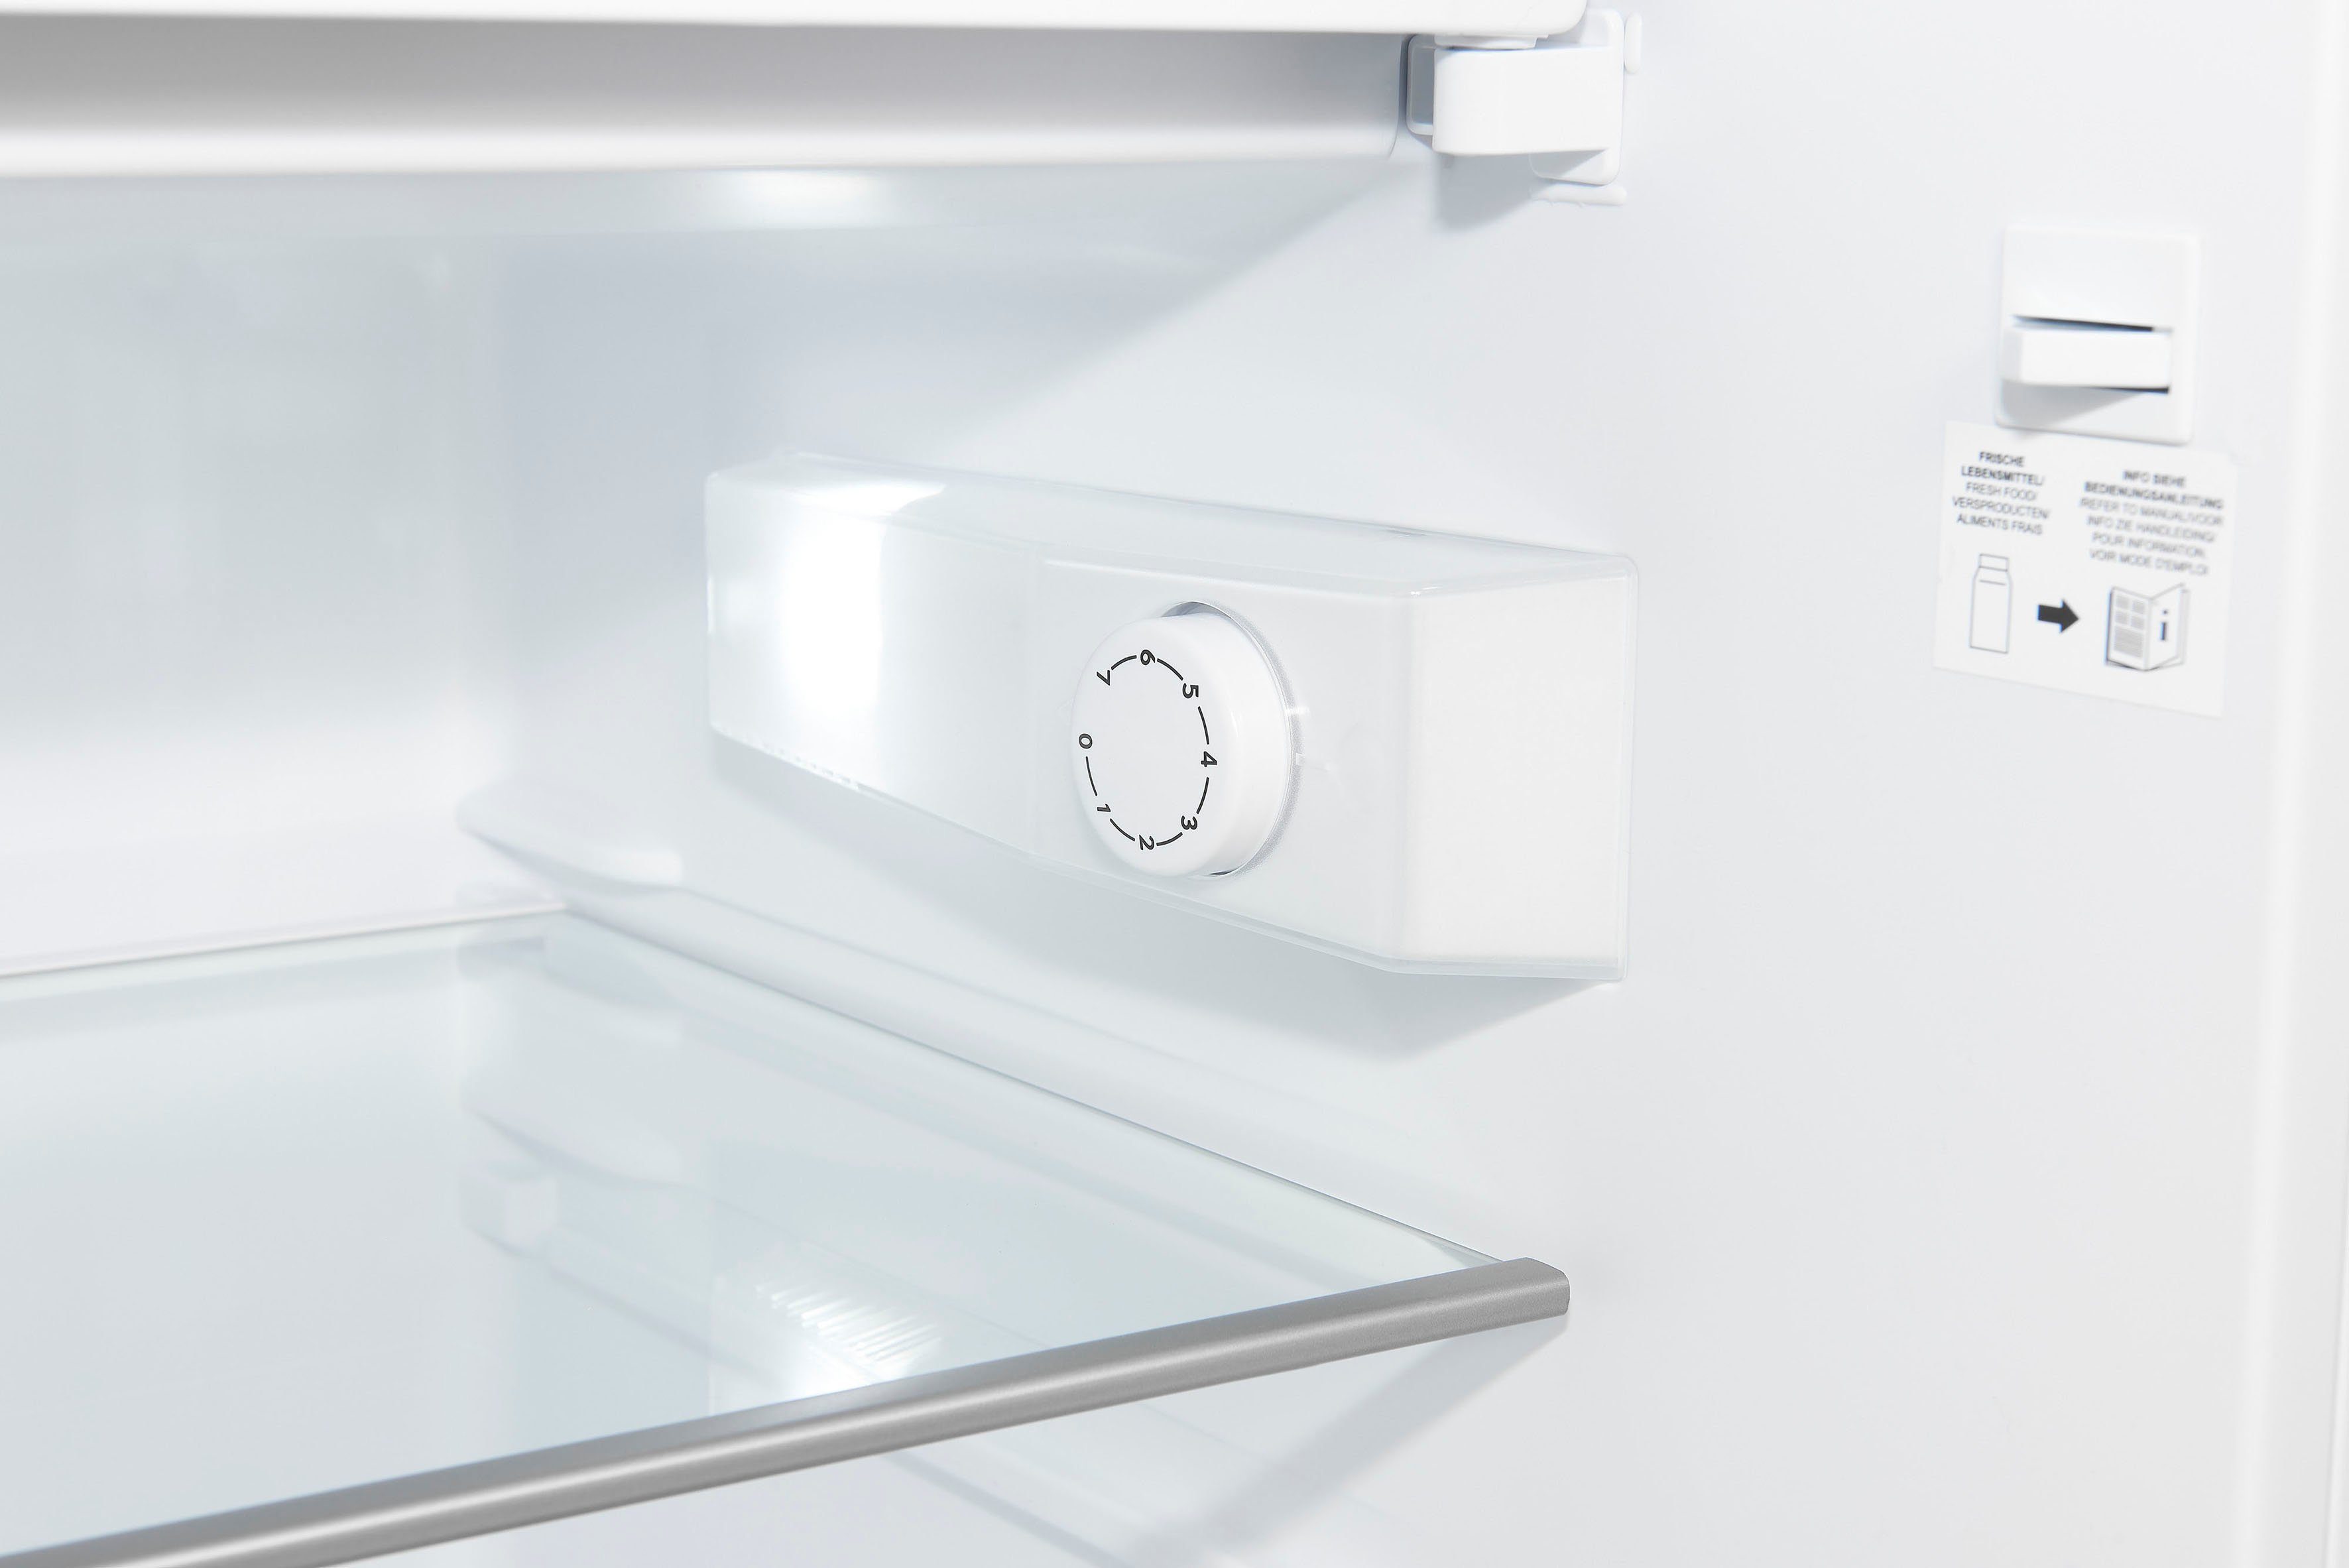 exquisit Kühlschrank KS16-4-H-010D 56 breit cm weiß hoch, weiss, 85 cm